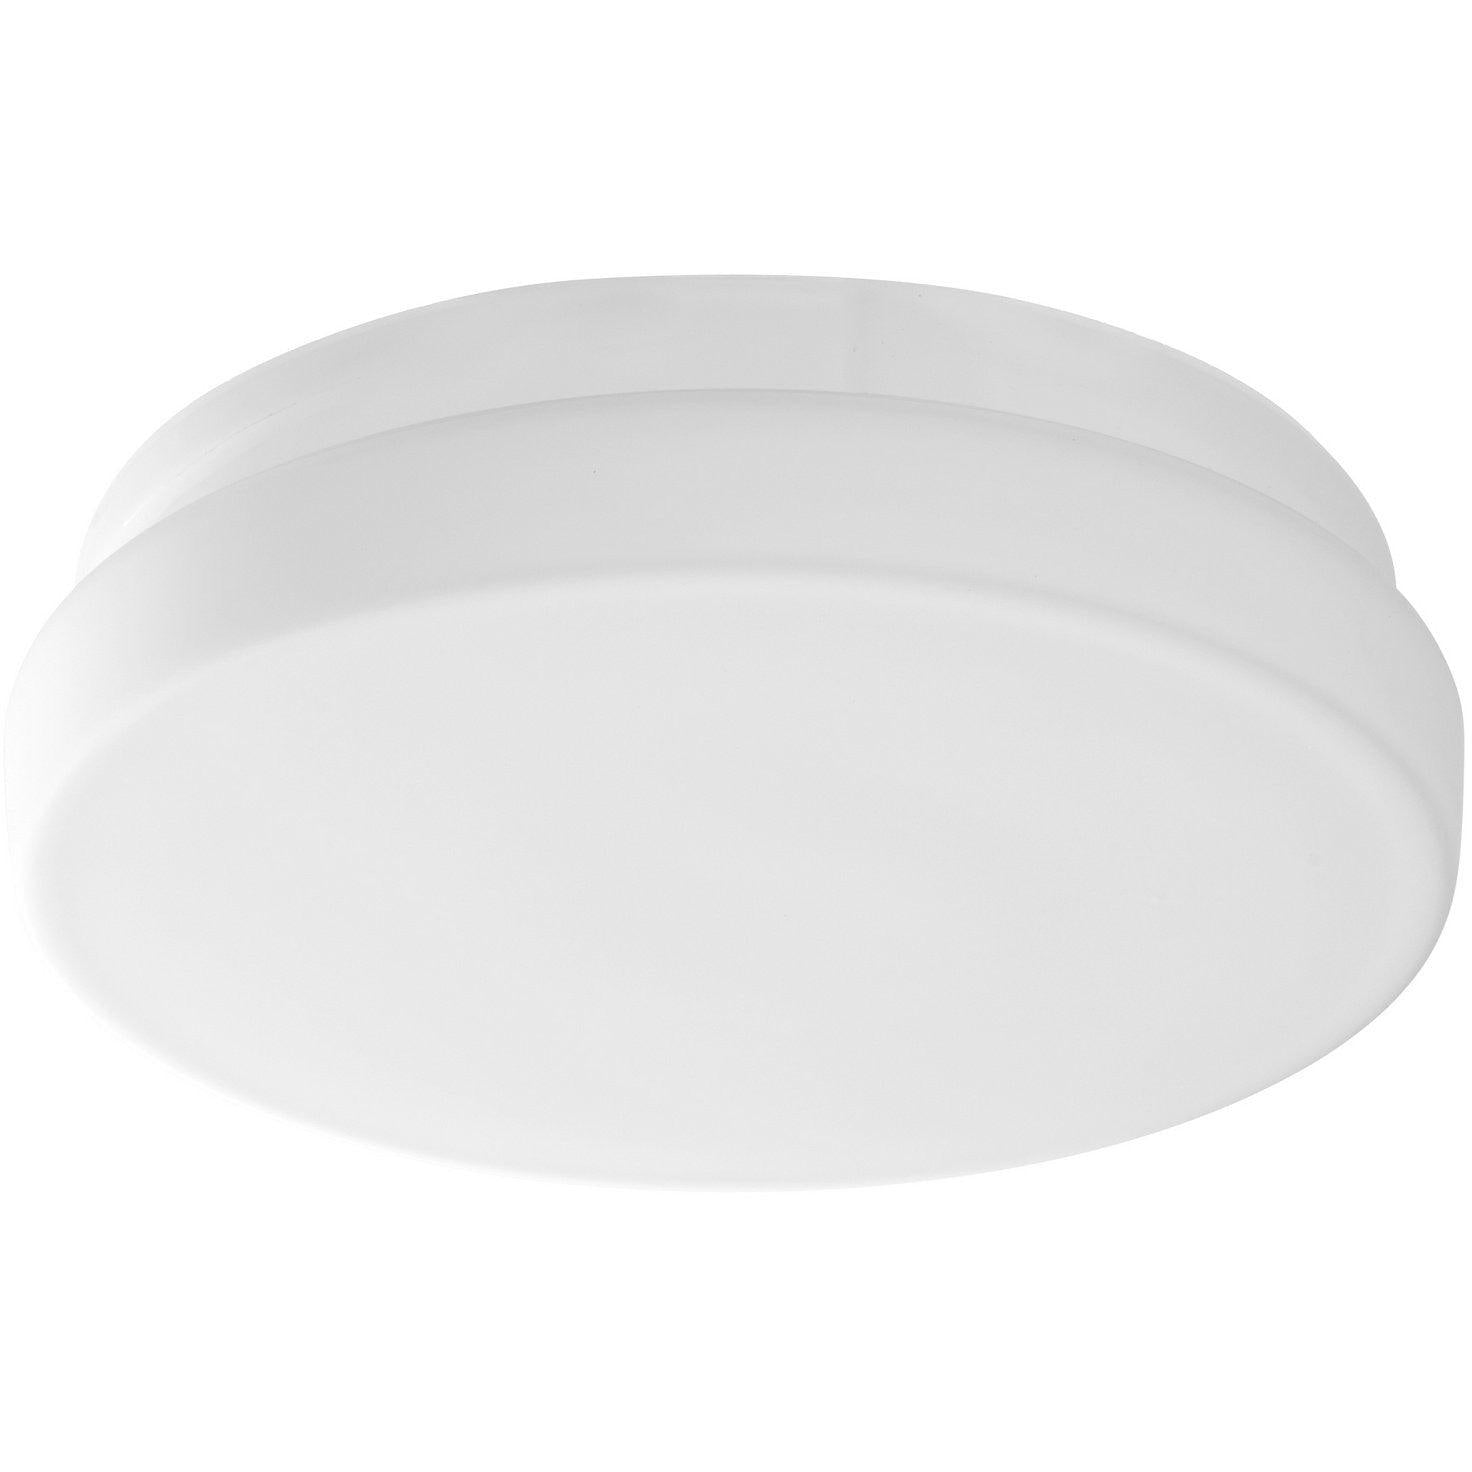 Oxygen Lighting - Oslo Ceiling Fan Light Kit Only - 3-9-101 | Montreal Lighting & Hardware